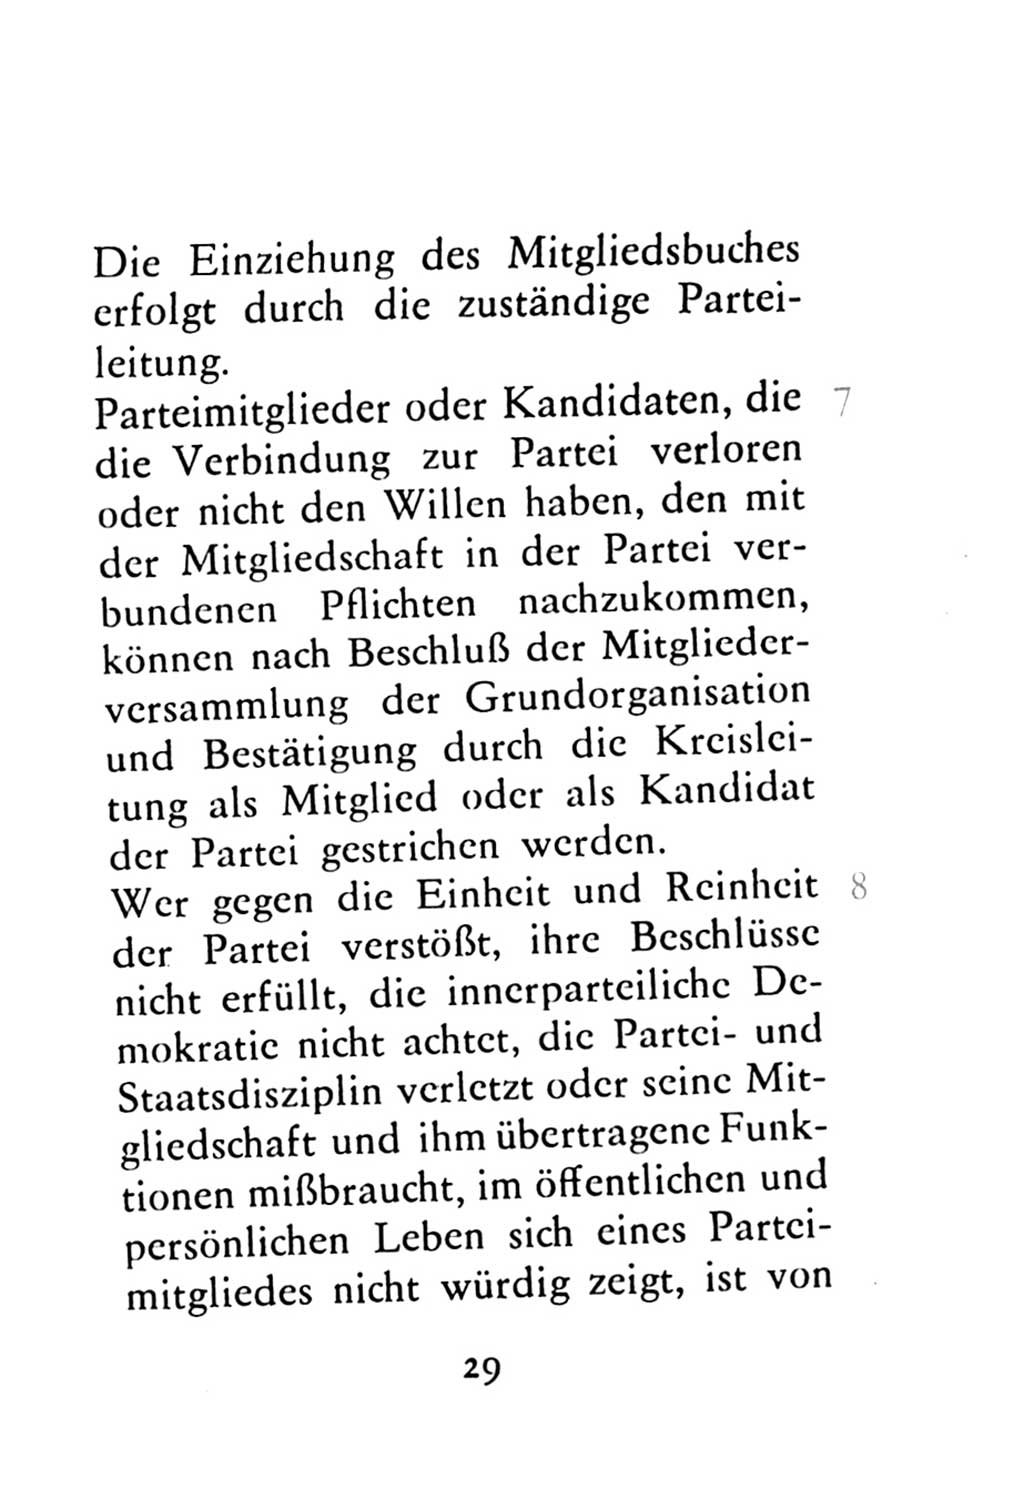 Statut der Sozialistischen Einheitspartei Deutschlands (SED) 1976, Seite 29 (St. SED DDR 1976, S. 29)